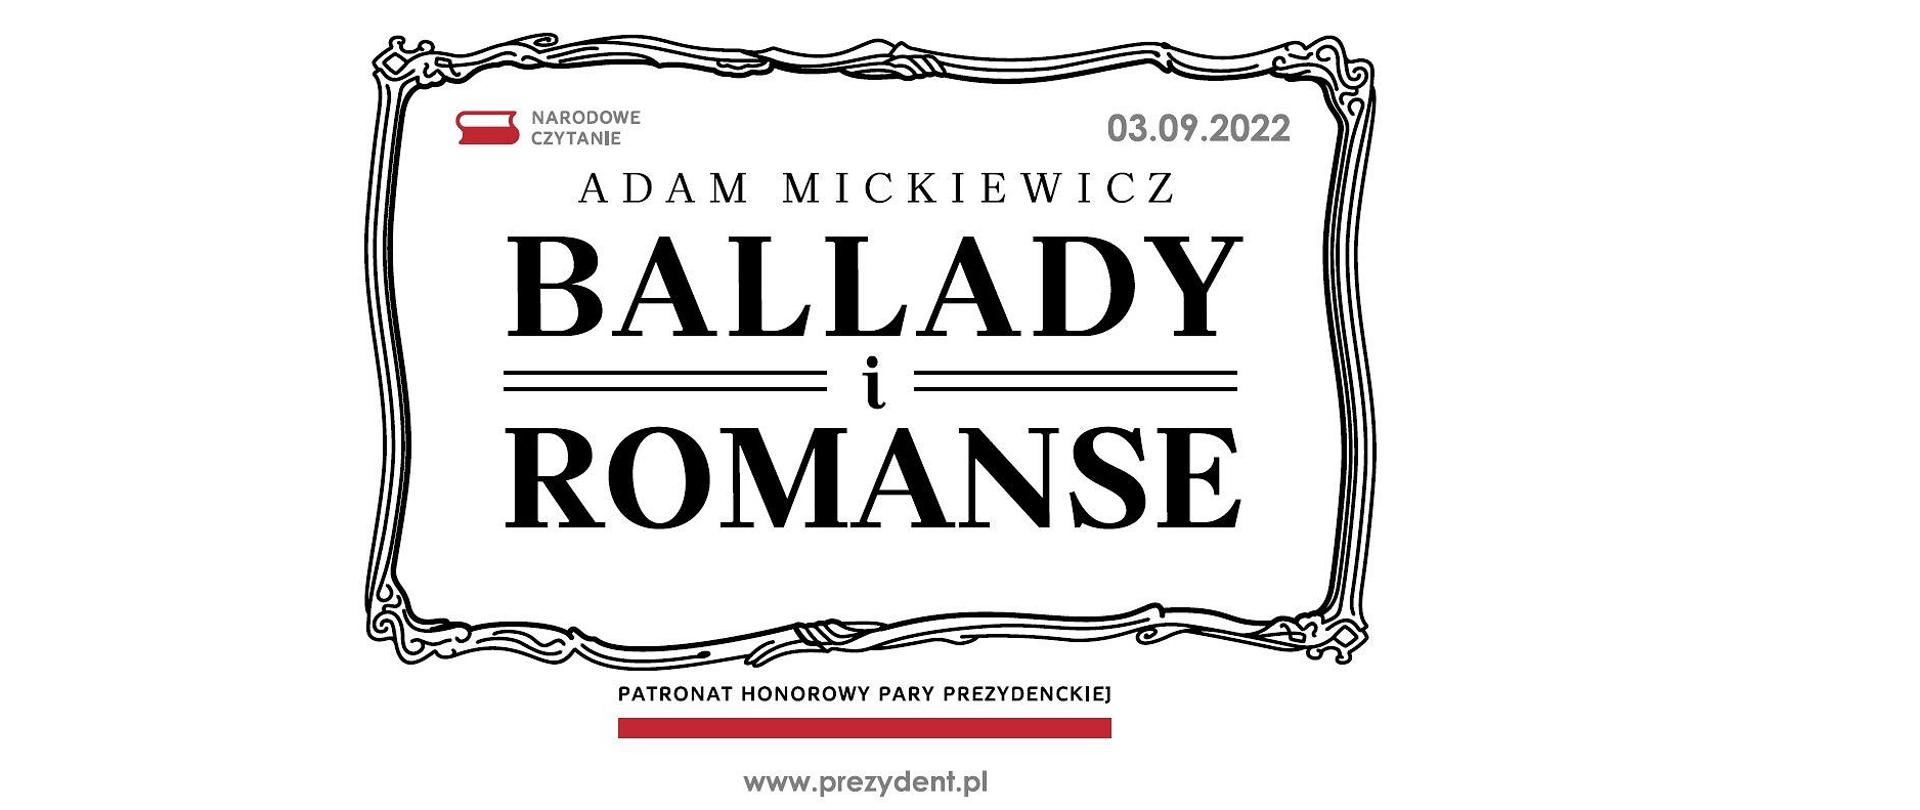 Adam Mickiewicz: Ballady i romanse. Patronat honorowy Pary Prezydenckiej